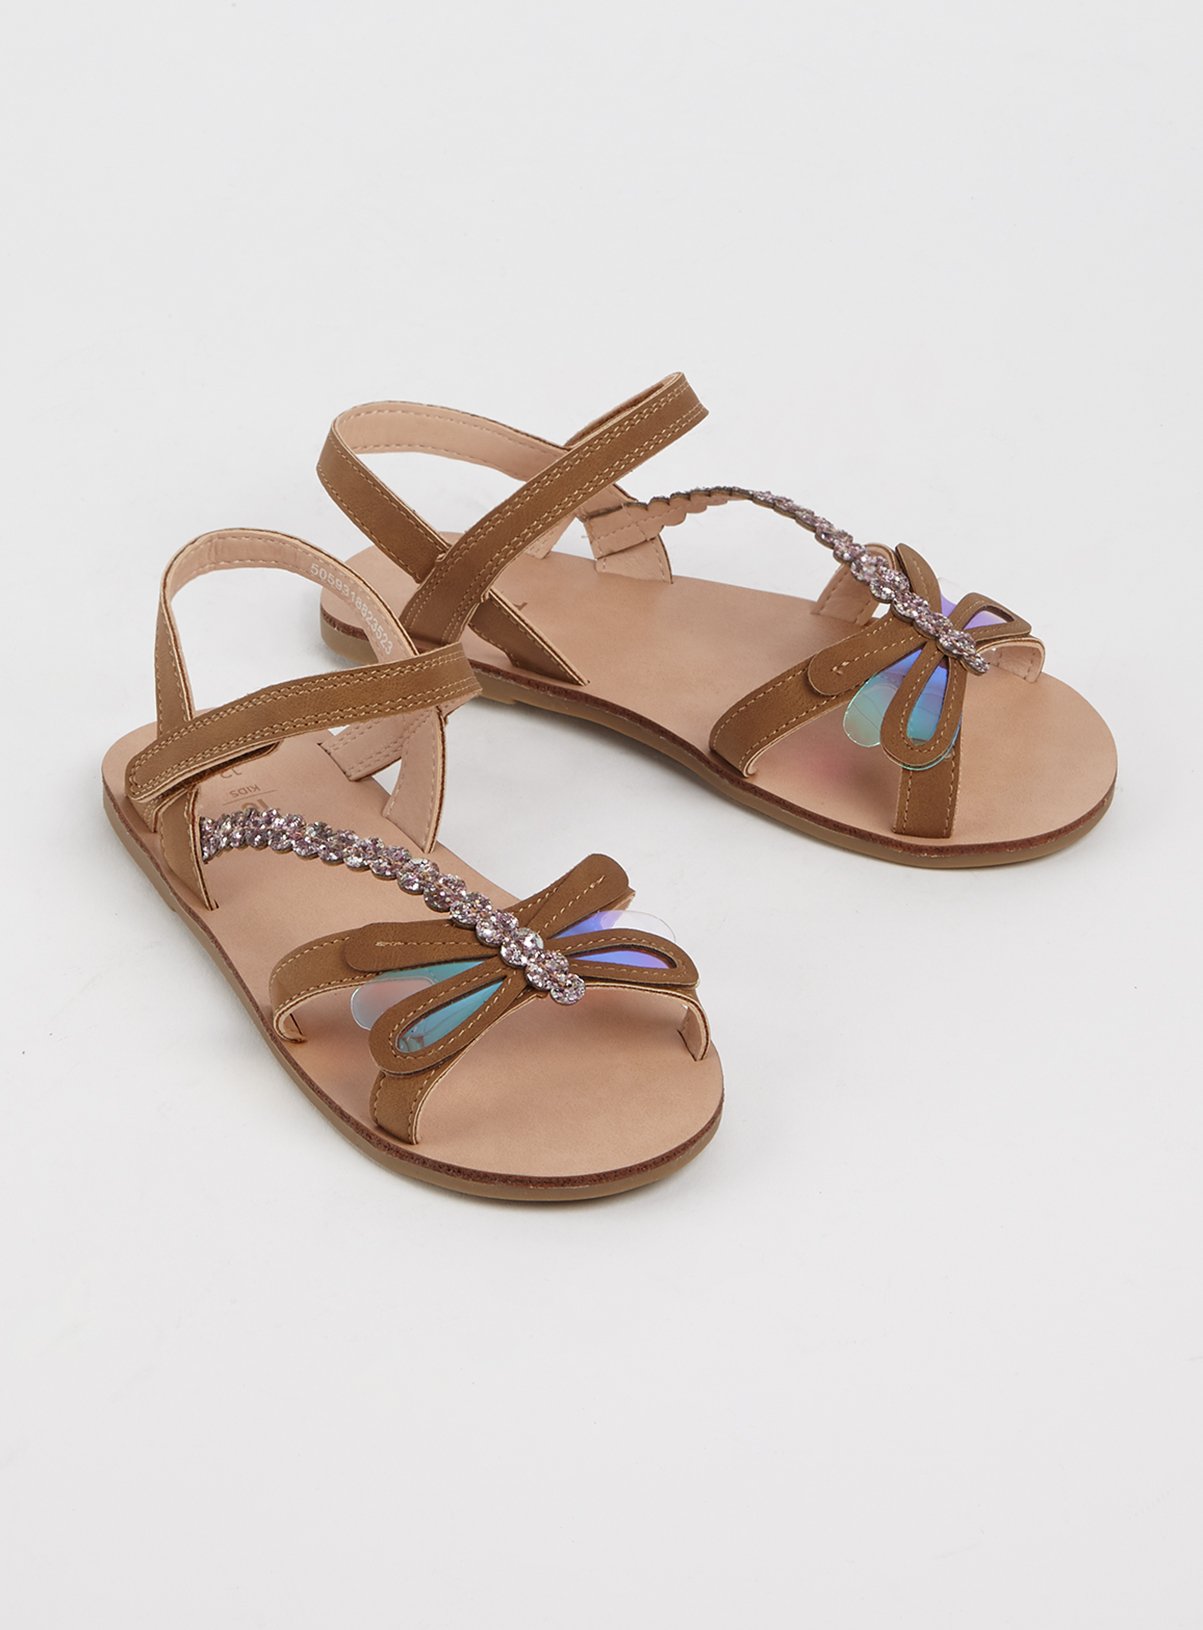 cute tan sandals